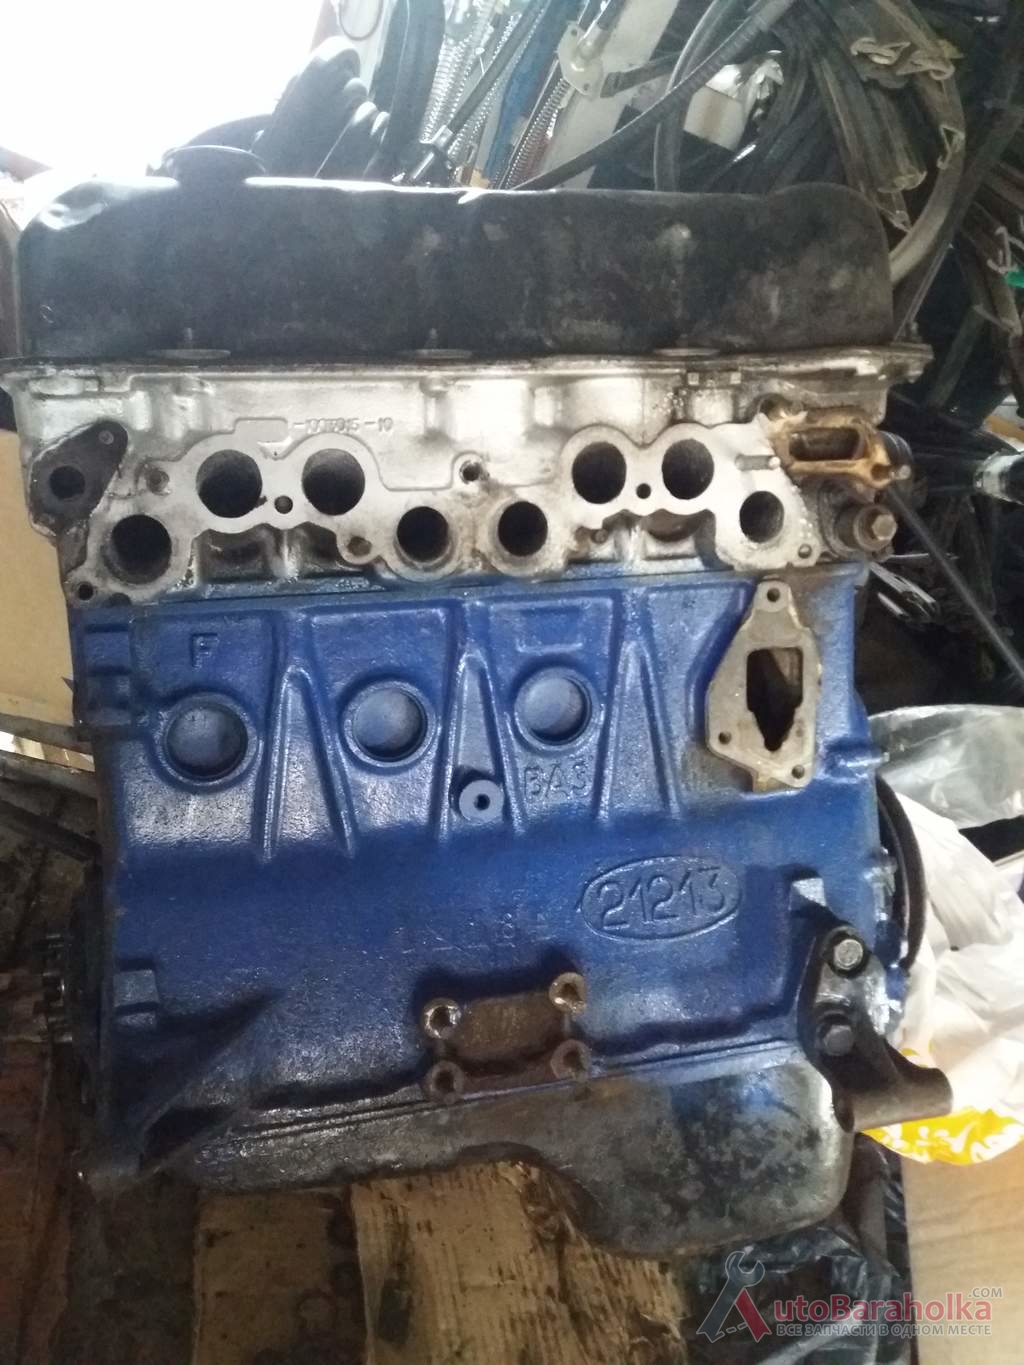 Продам Двигатель Мотор ВАЗ Нива 21213 бу из Польши идеал и после кап ремонта. Гарантия Полтава